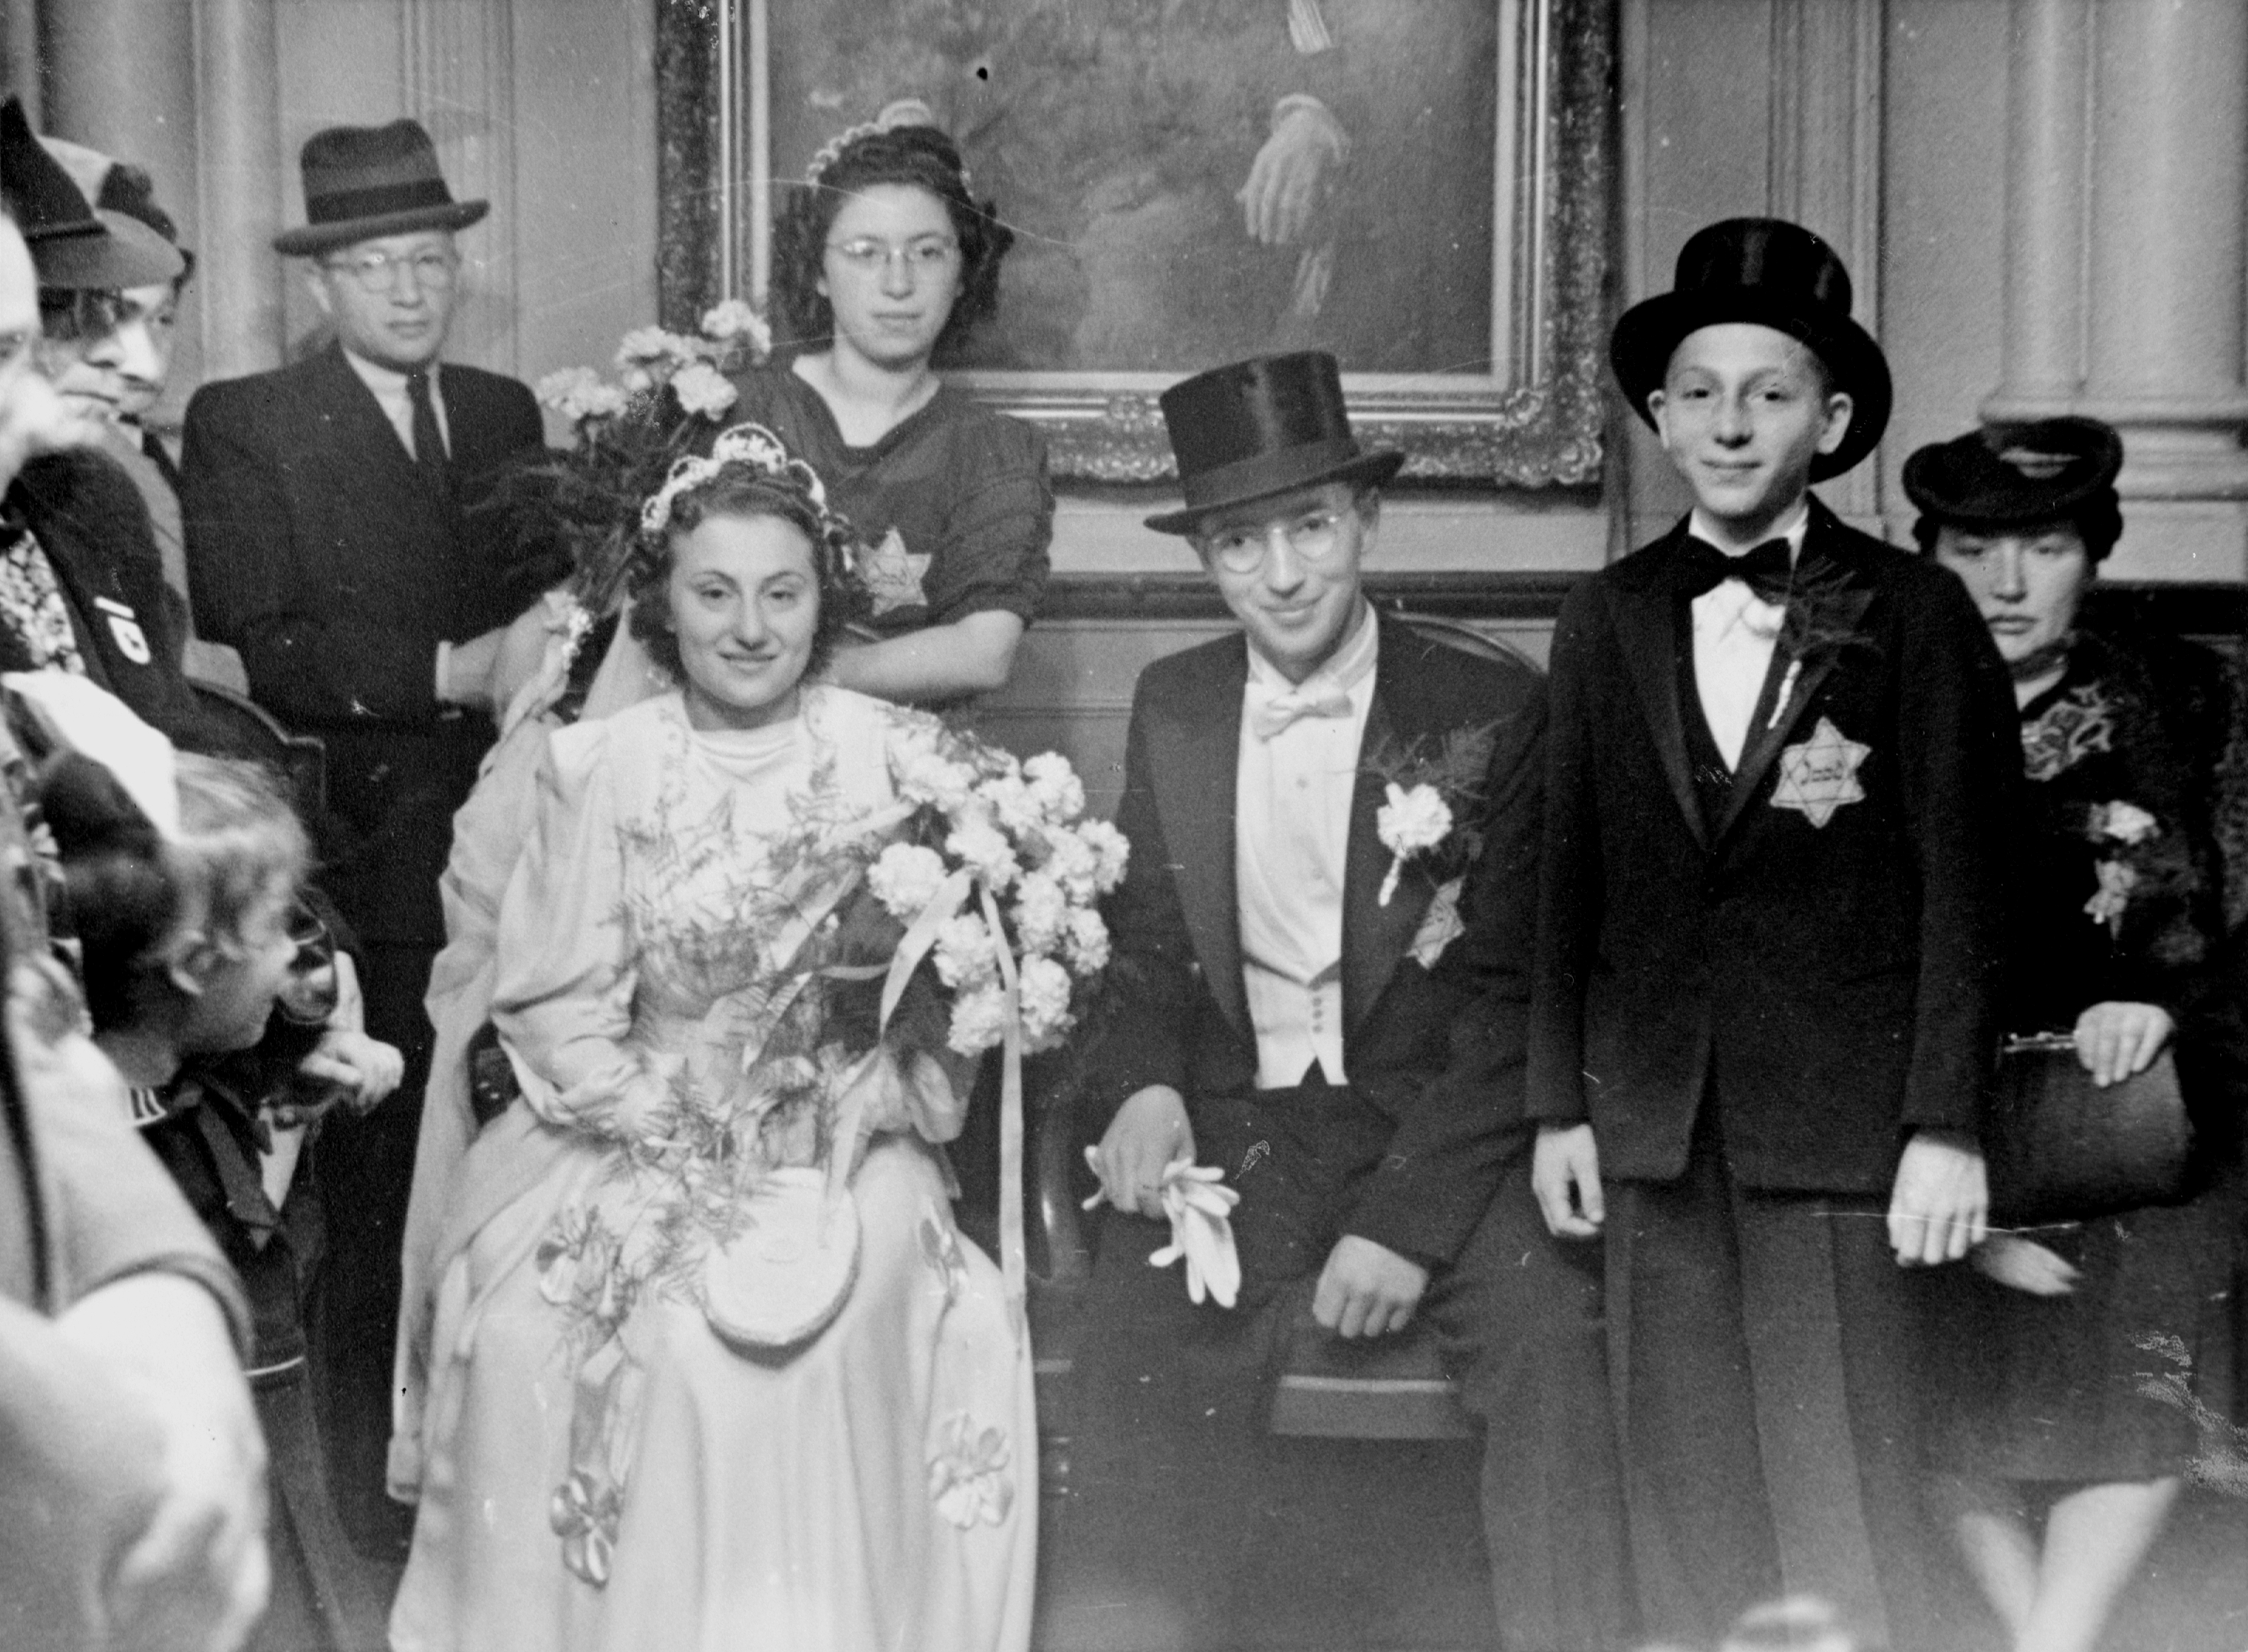 Huwelijk van Emanuel Swaab (1920-1948) en Margaretha van Witsen (1920-2009), ergens in 1942